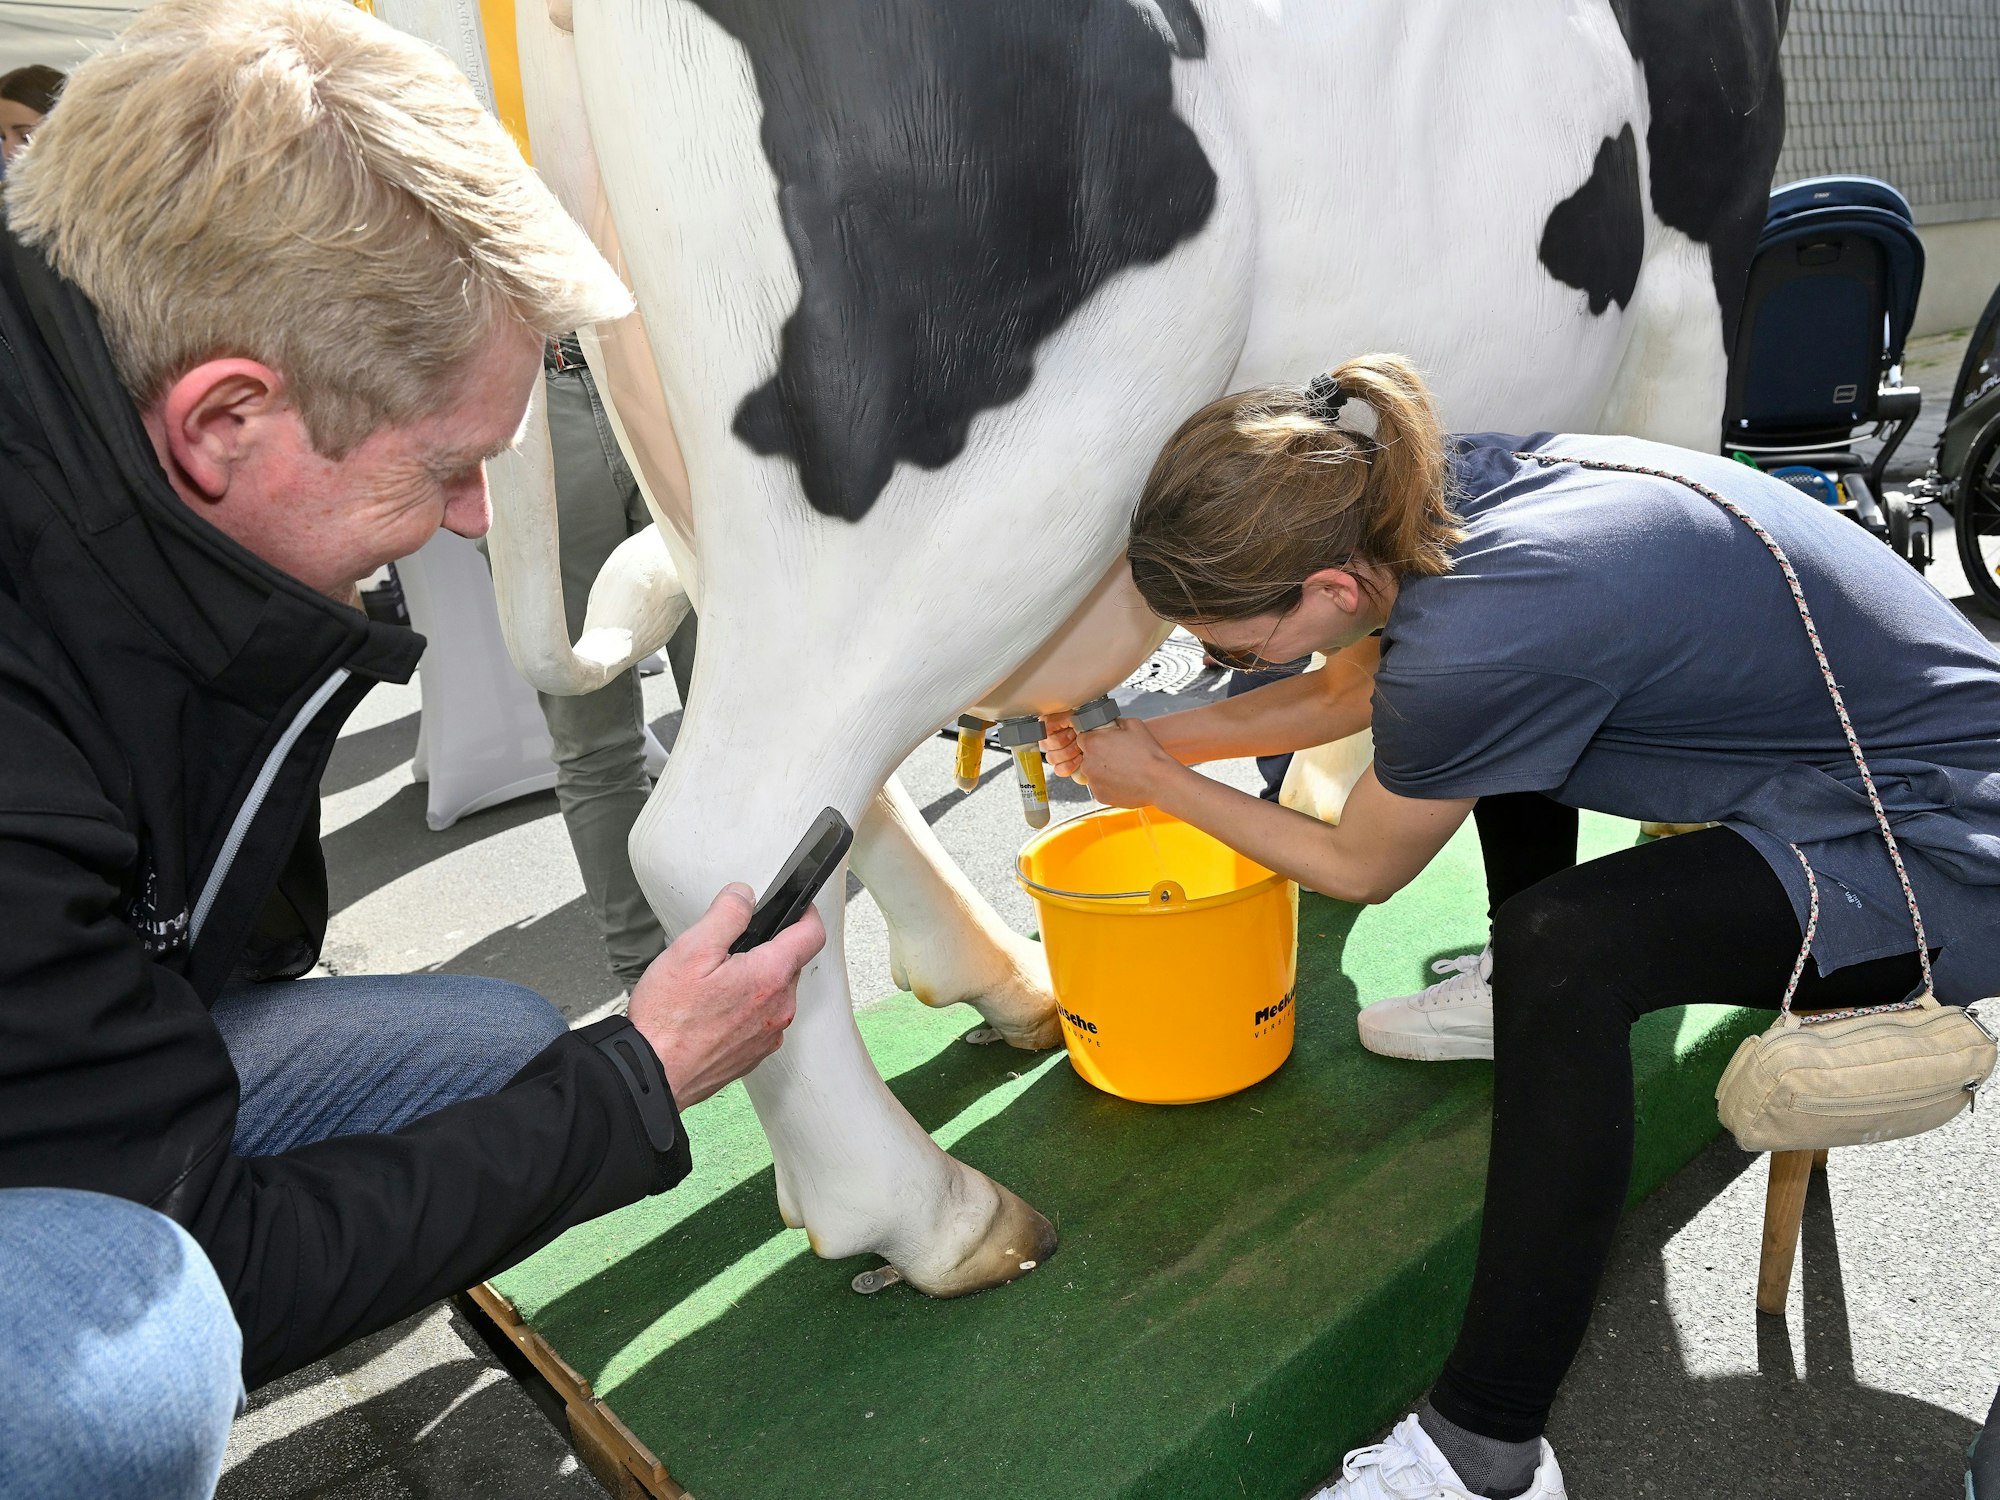 Eine Frau melkt eine Kuh aus Kunststoff. Dabei spritzt Wasser aus dem künstlichen Euter in einen Eimer.